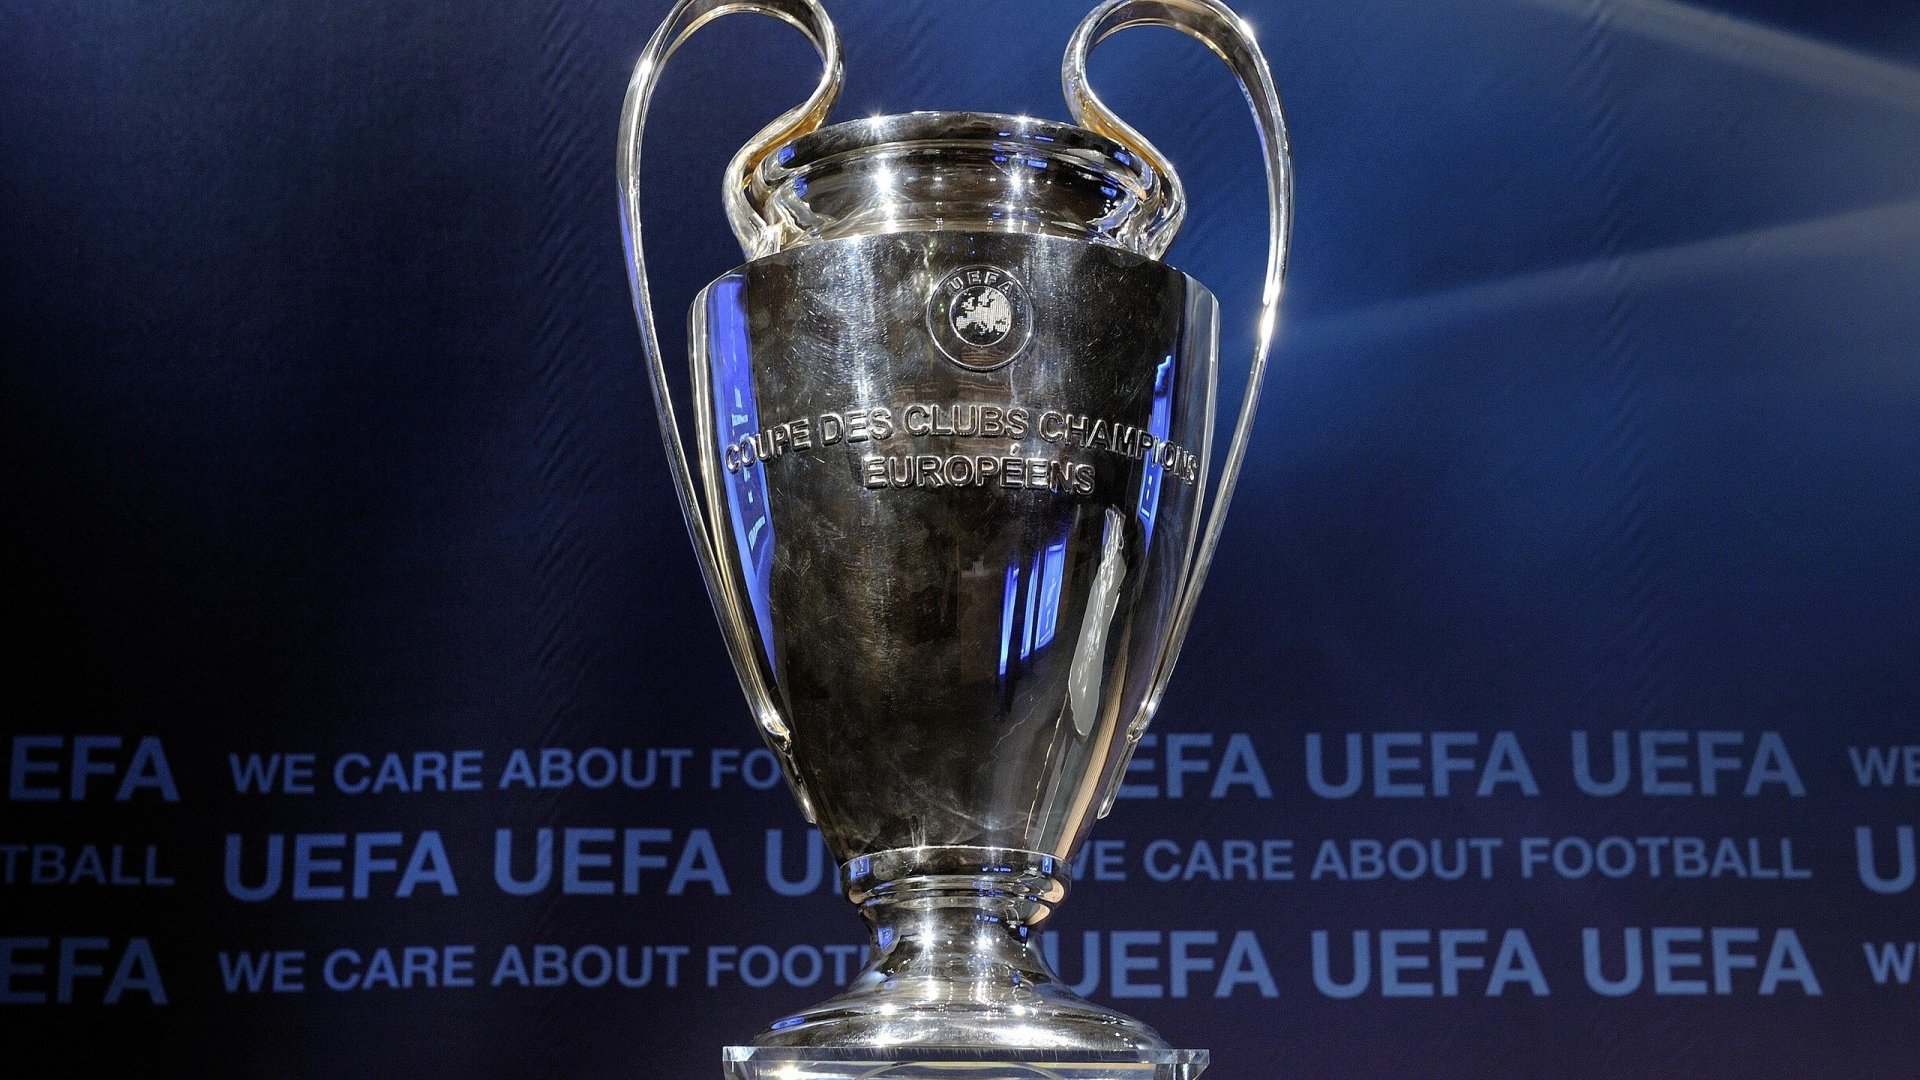 Arte: Exposição gratuita da taça da UEFA Champions League